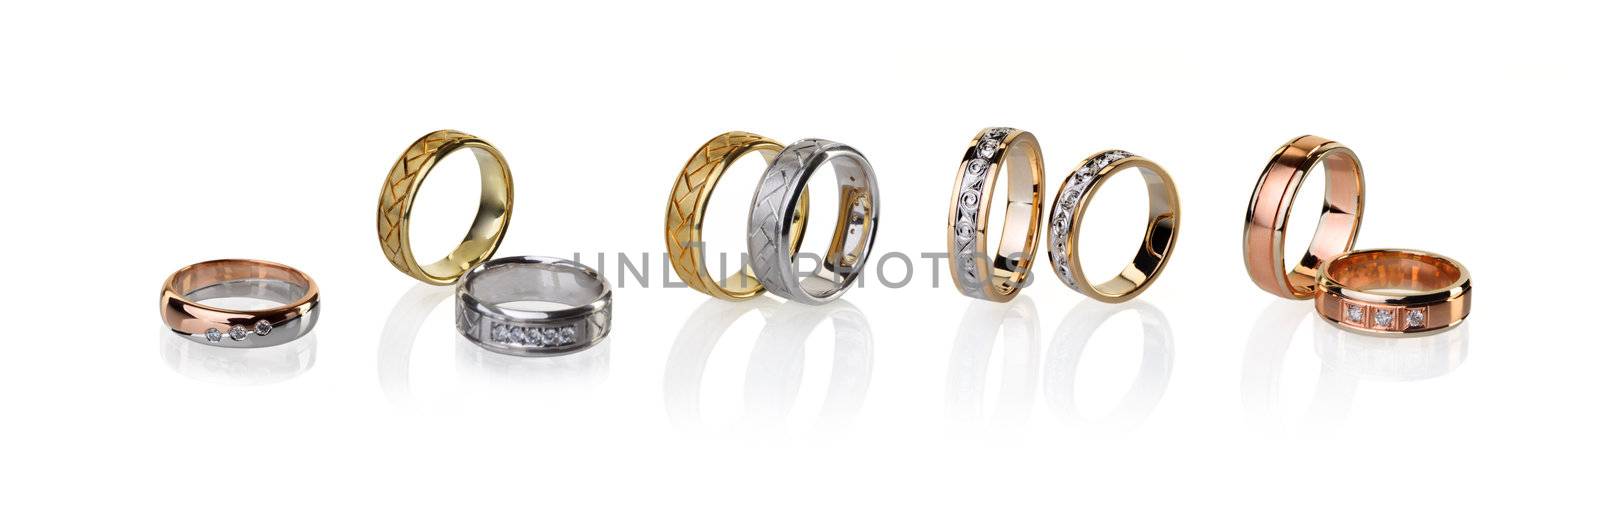 Wedding rings by alex7021